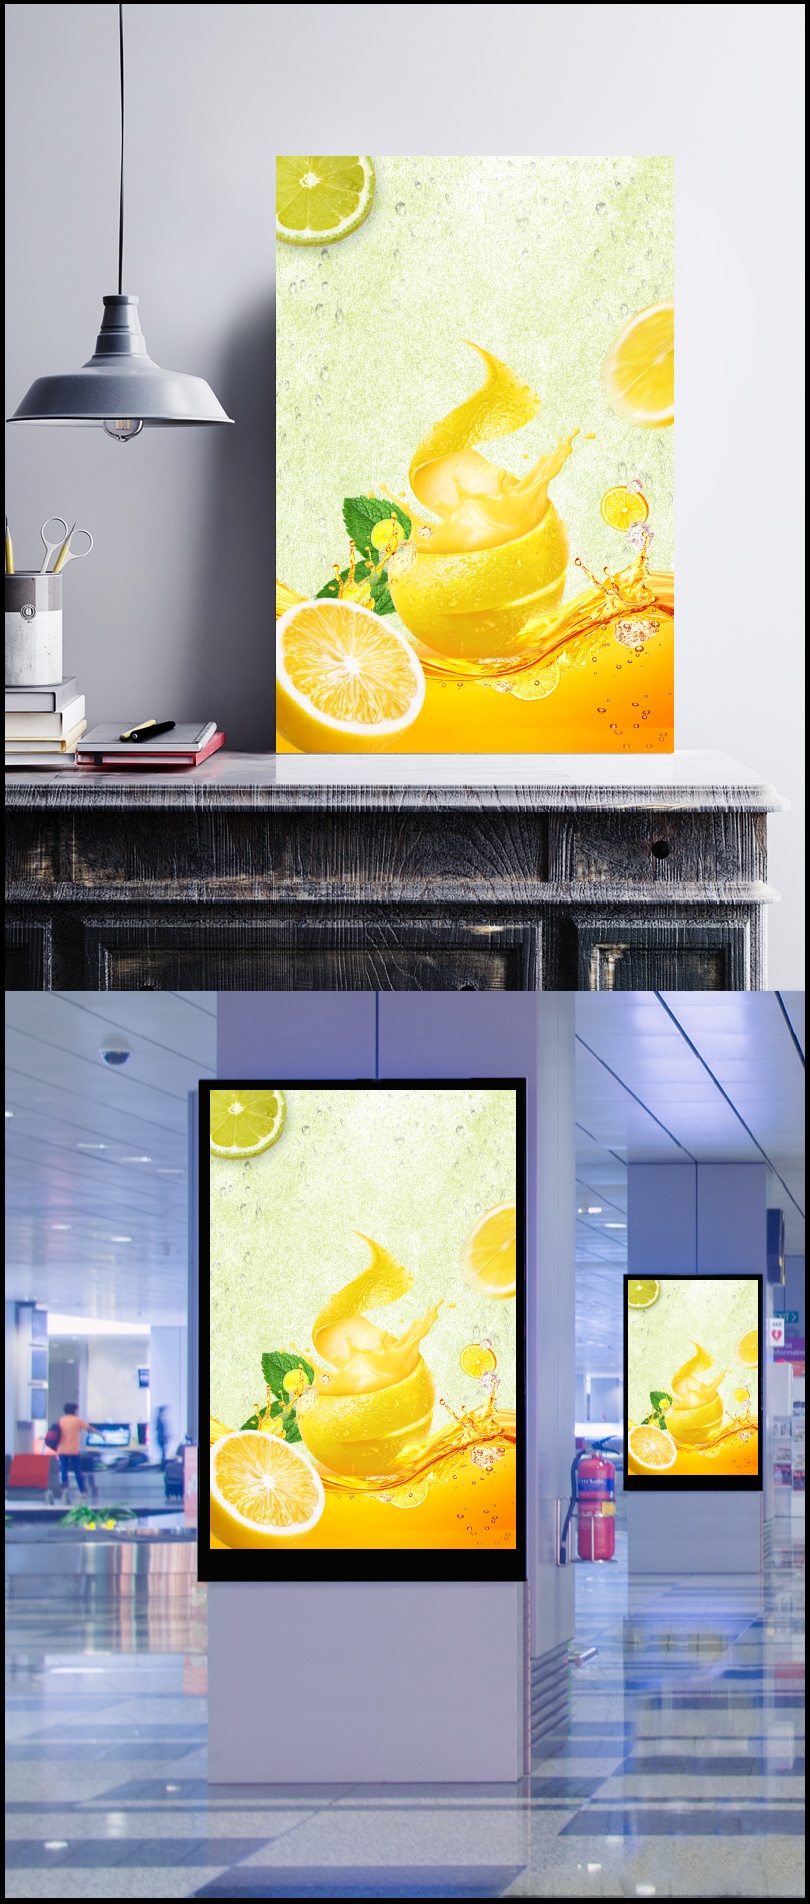 夏季橙汁海报设计